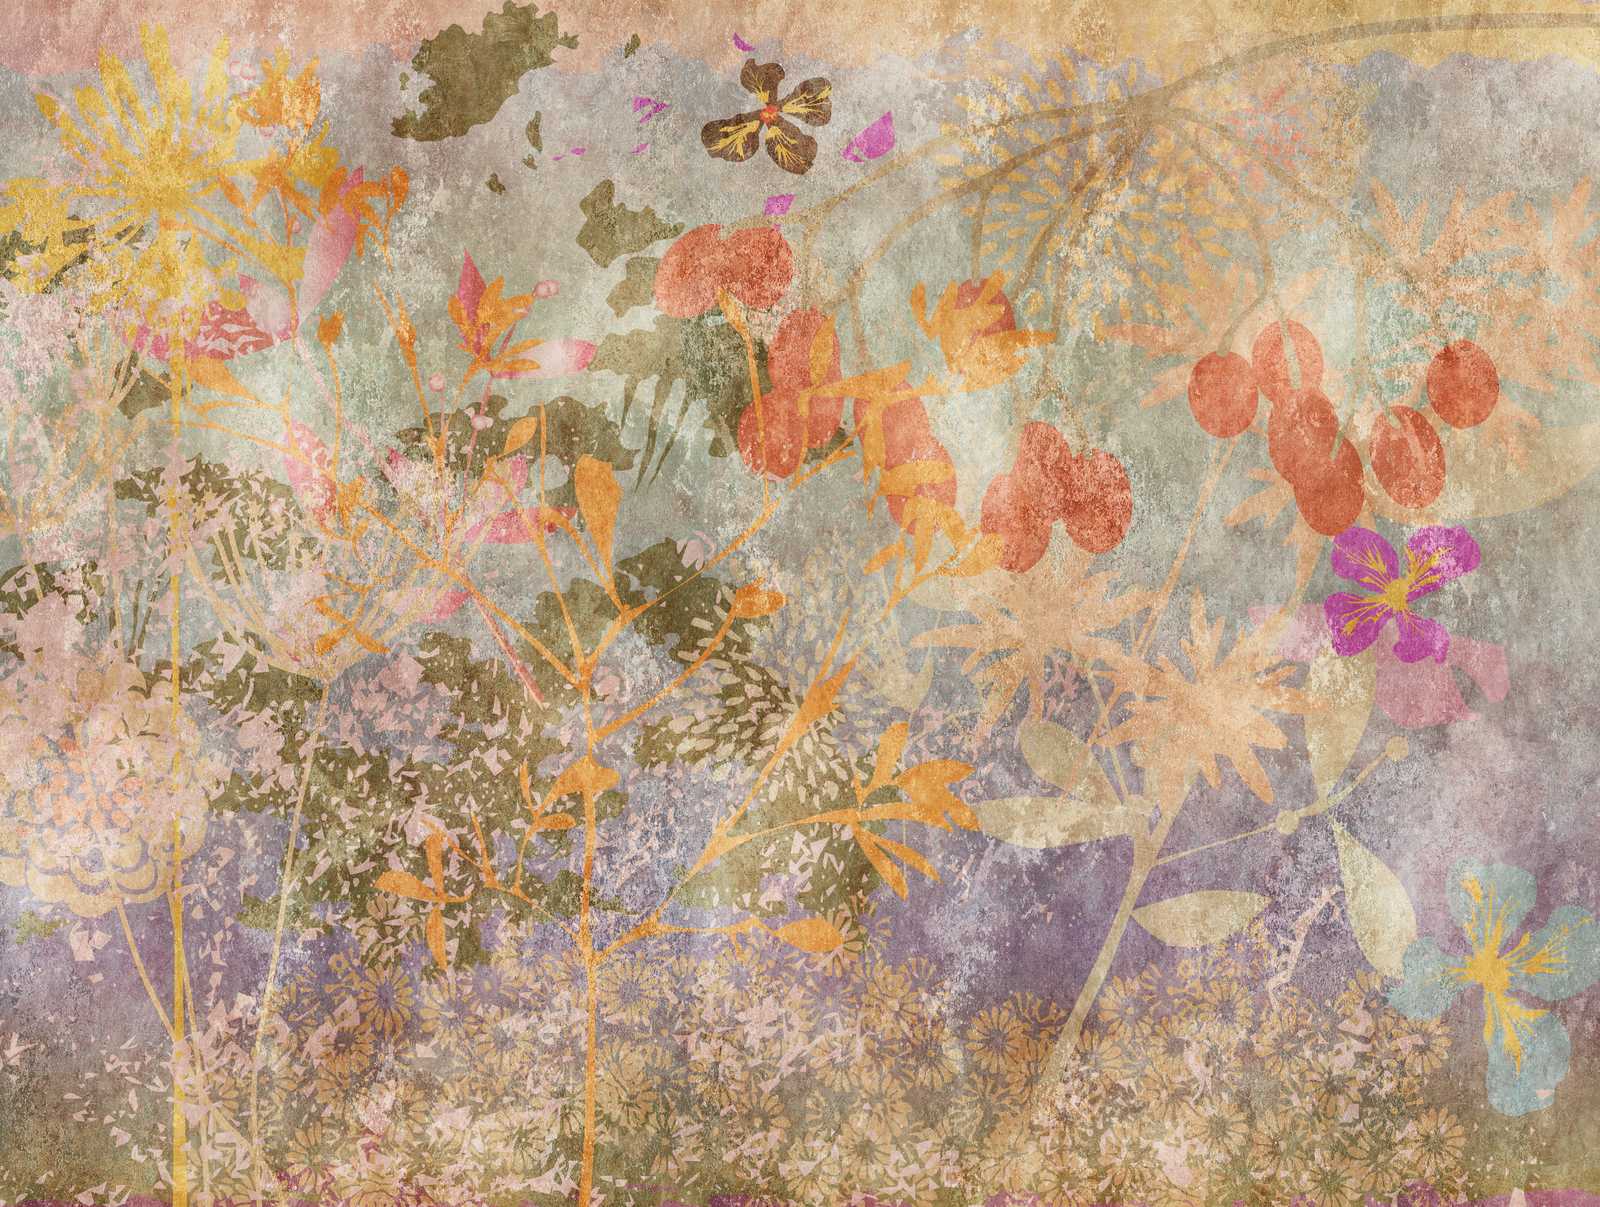             Nouveauté en matière de papier peint - papier peint à motifs Fresque florale dans le style rétro
        